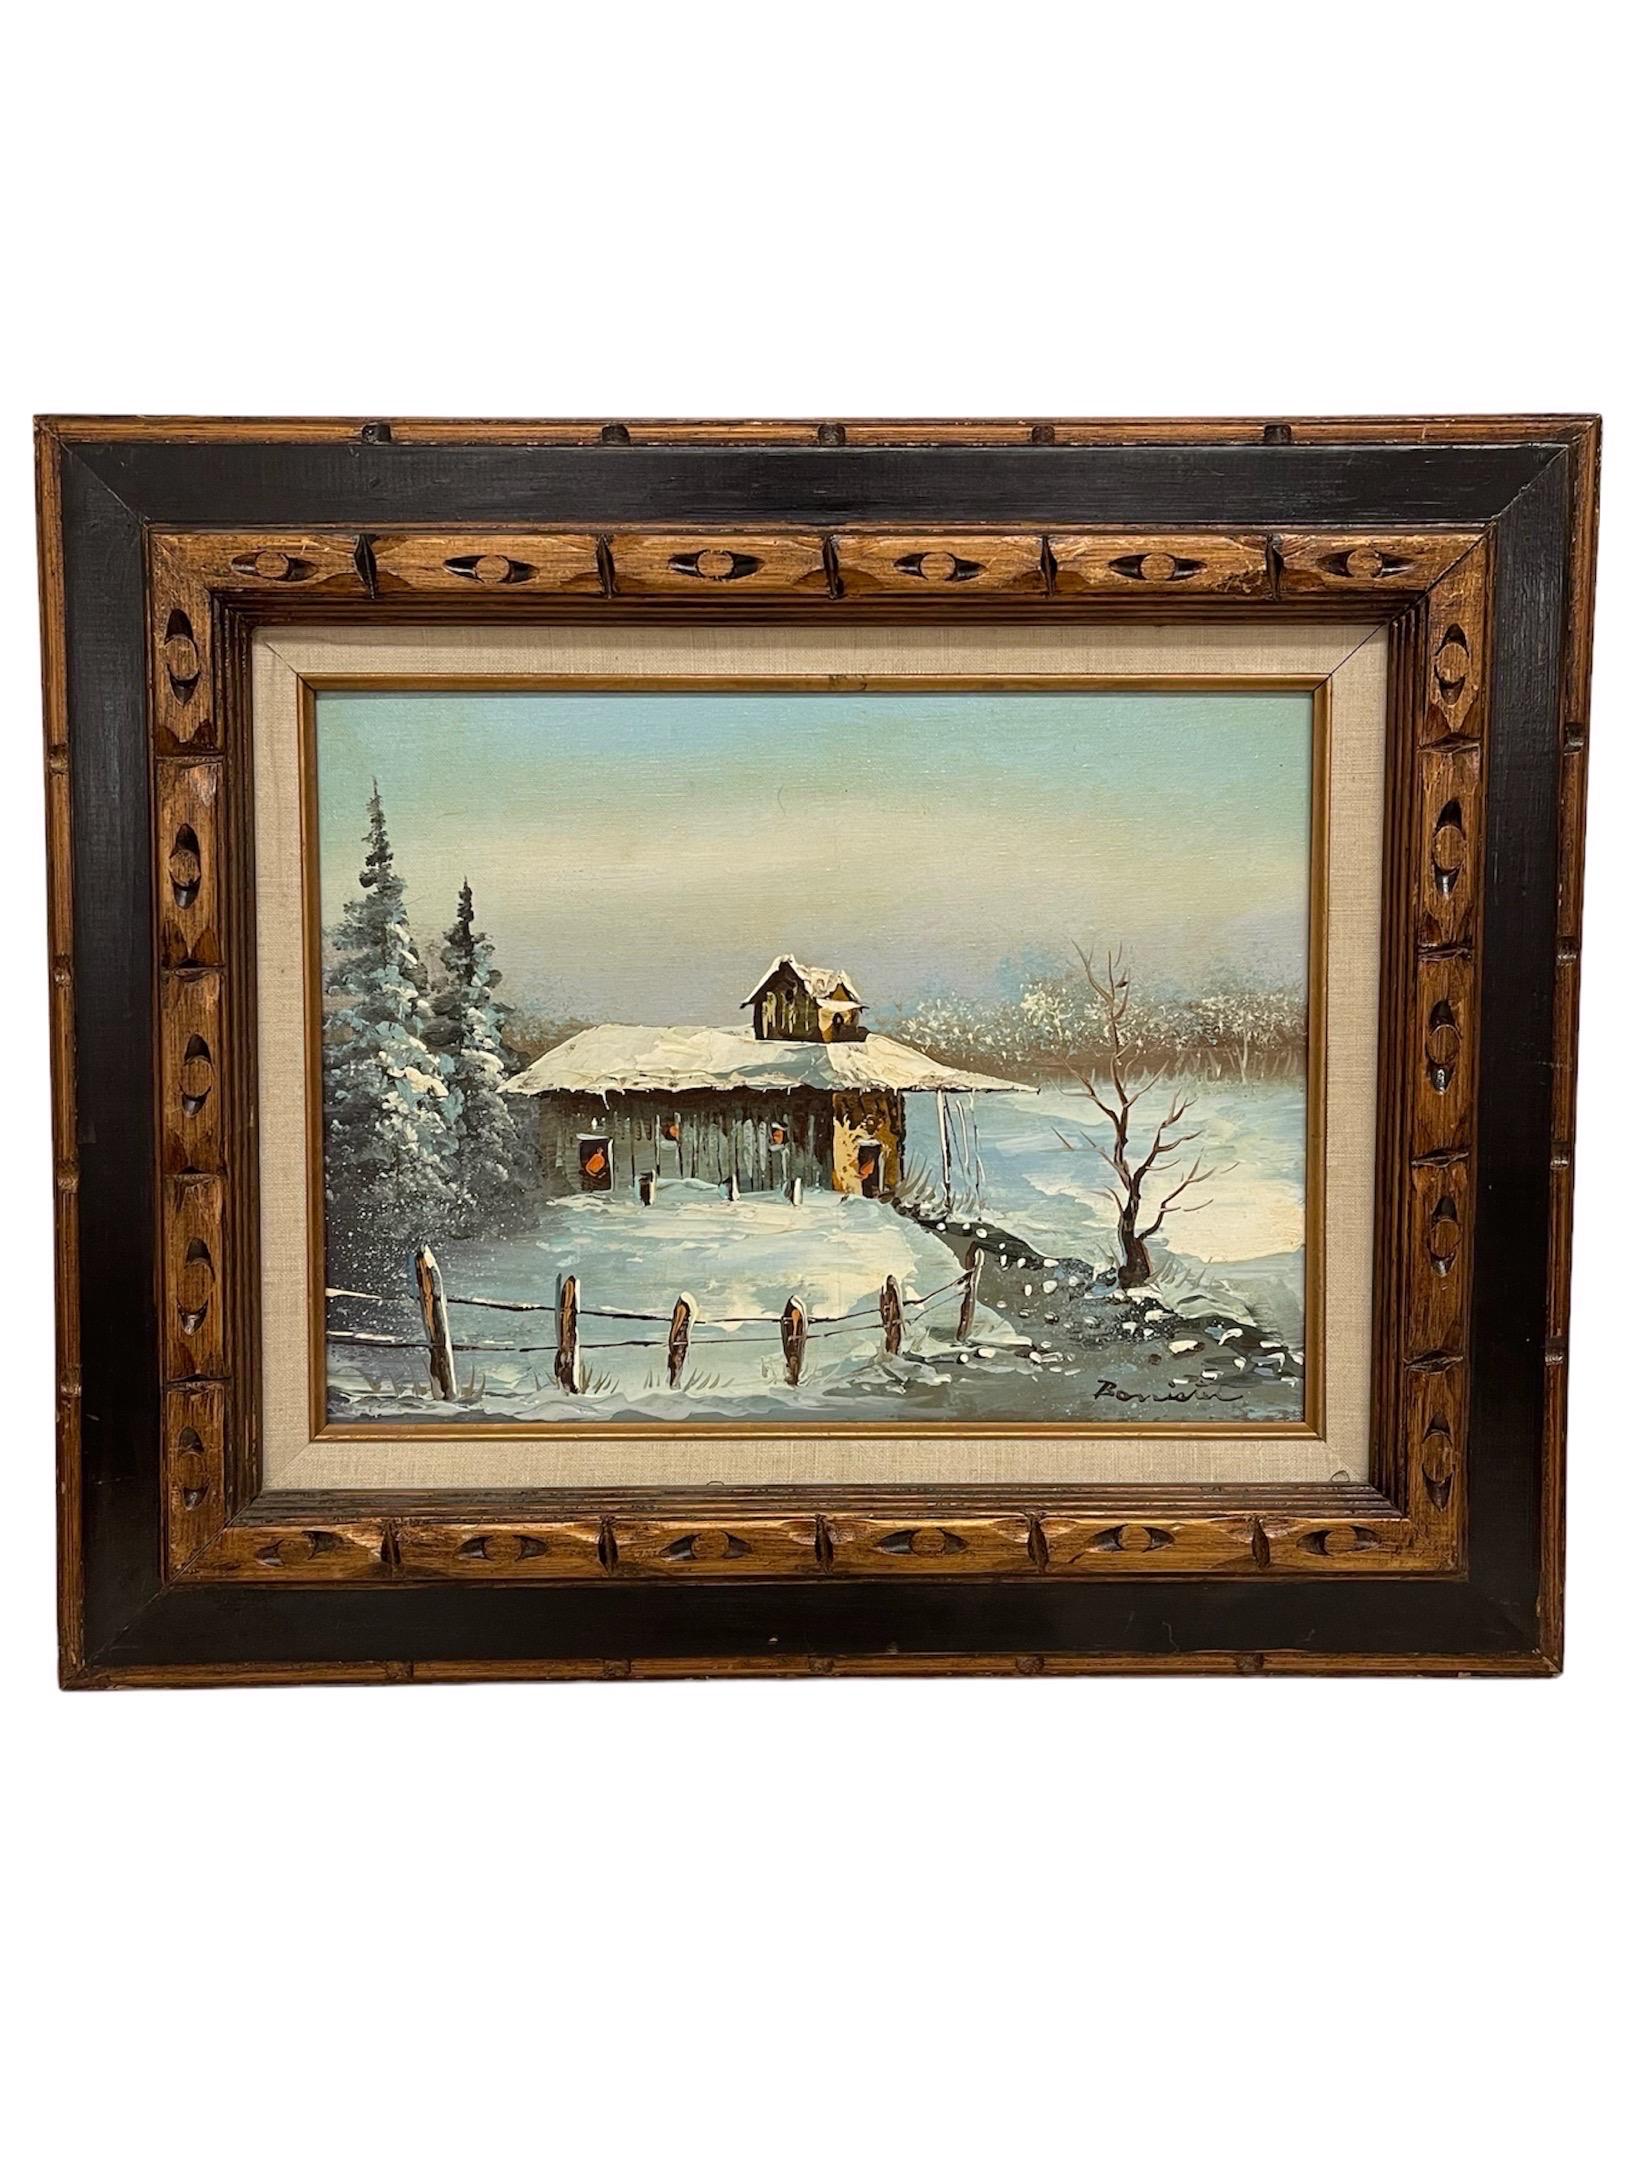 Vintage Signed Gemälde von Winter Cabin auf Leinwand.

Abmessungen. 23 1/2 B ; 19 1/2 H